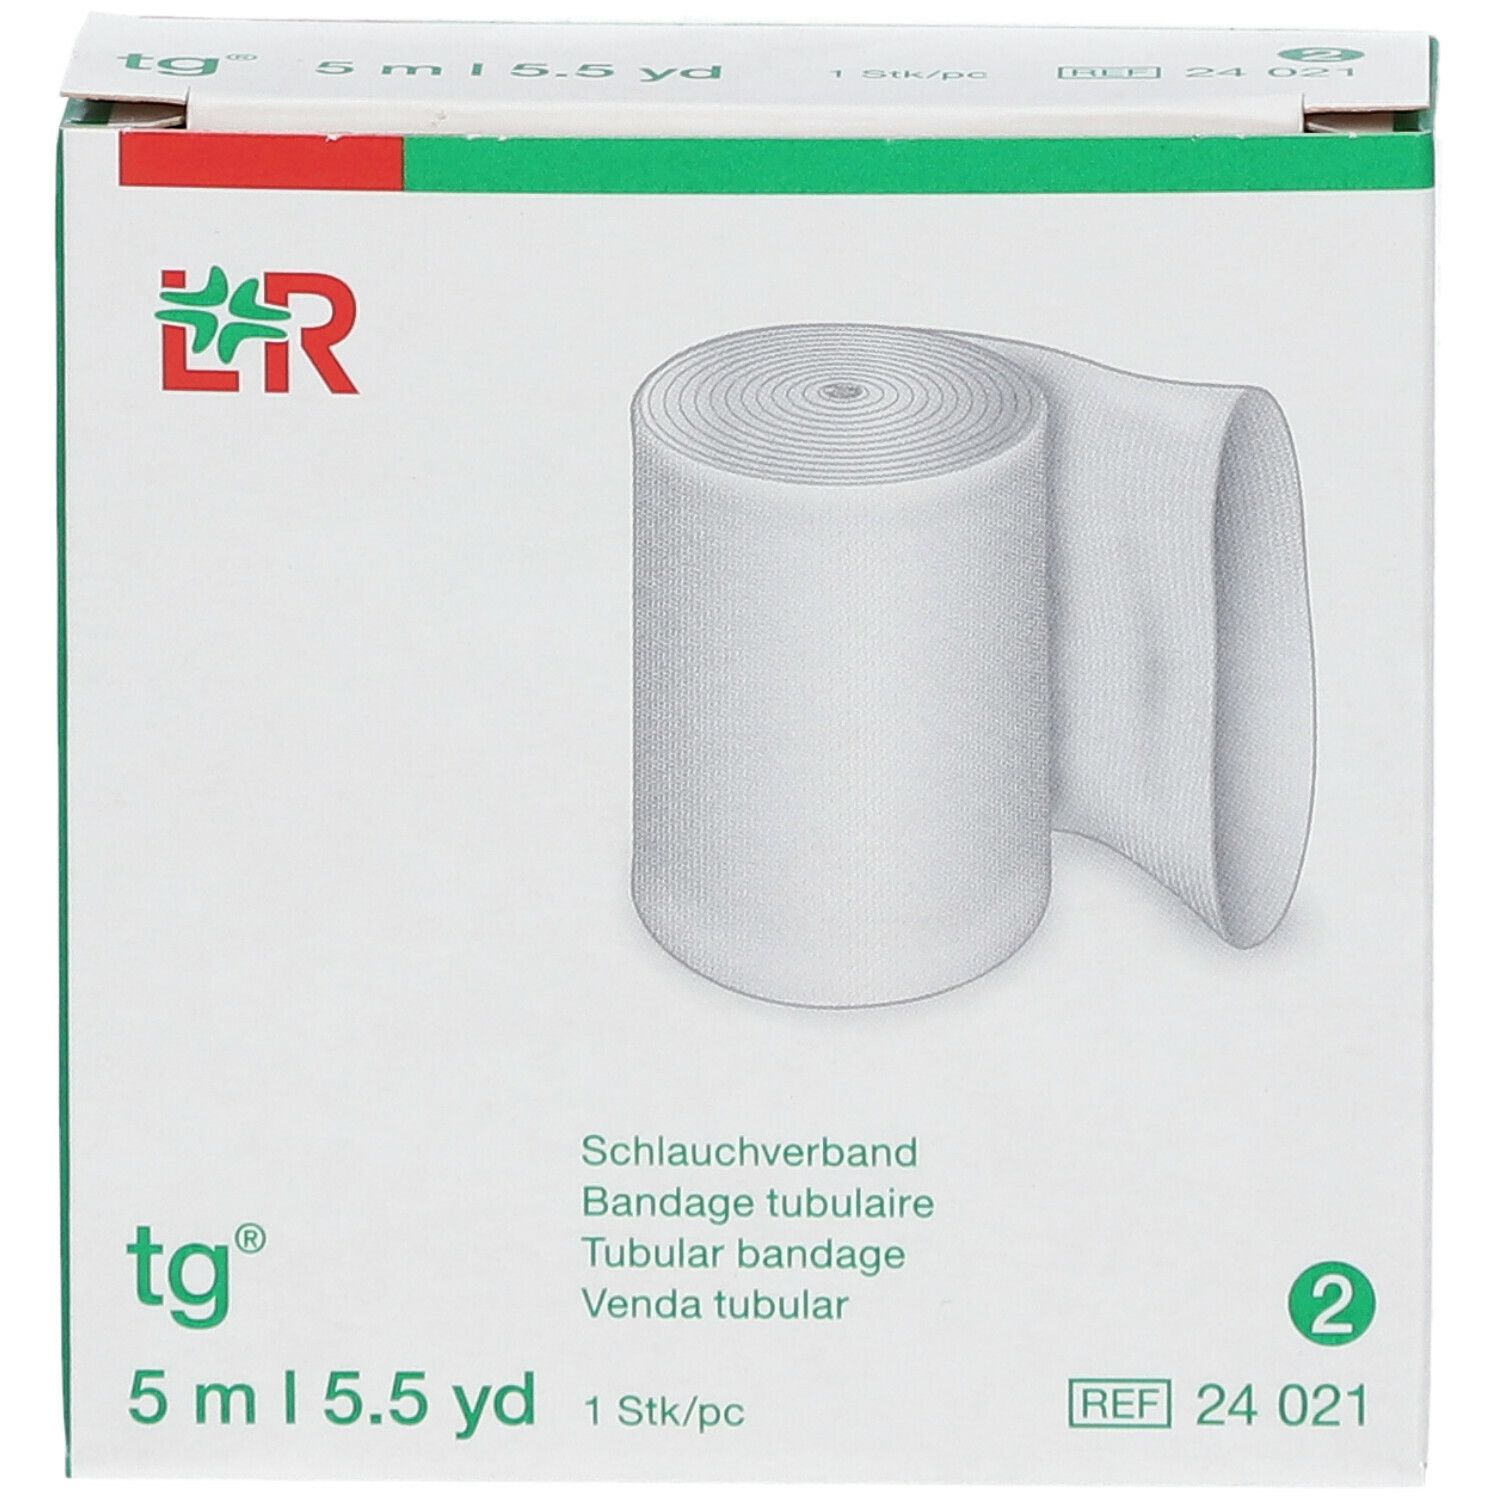 TG Bandage Tubulaire 2.3cm 24021